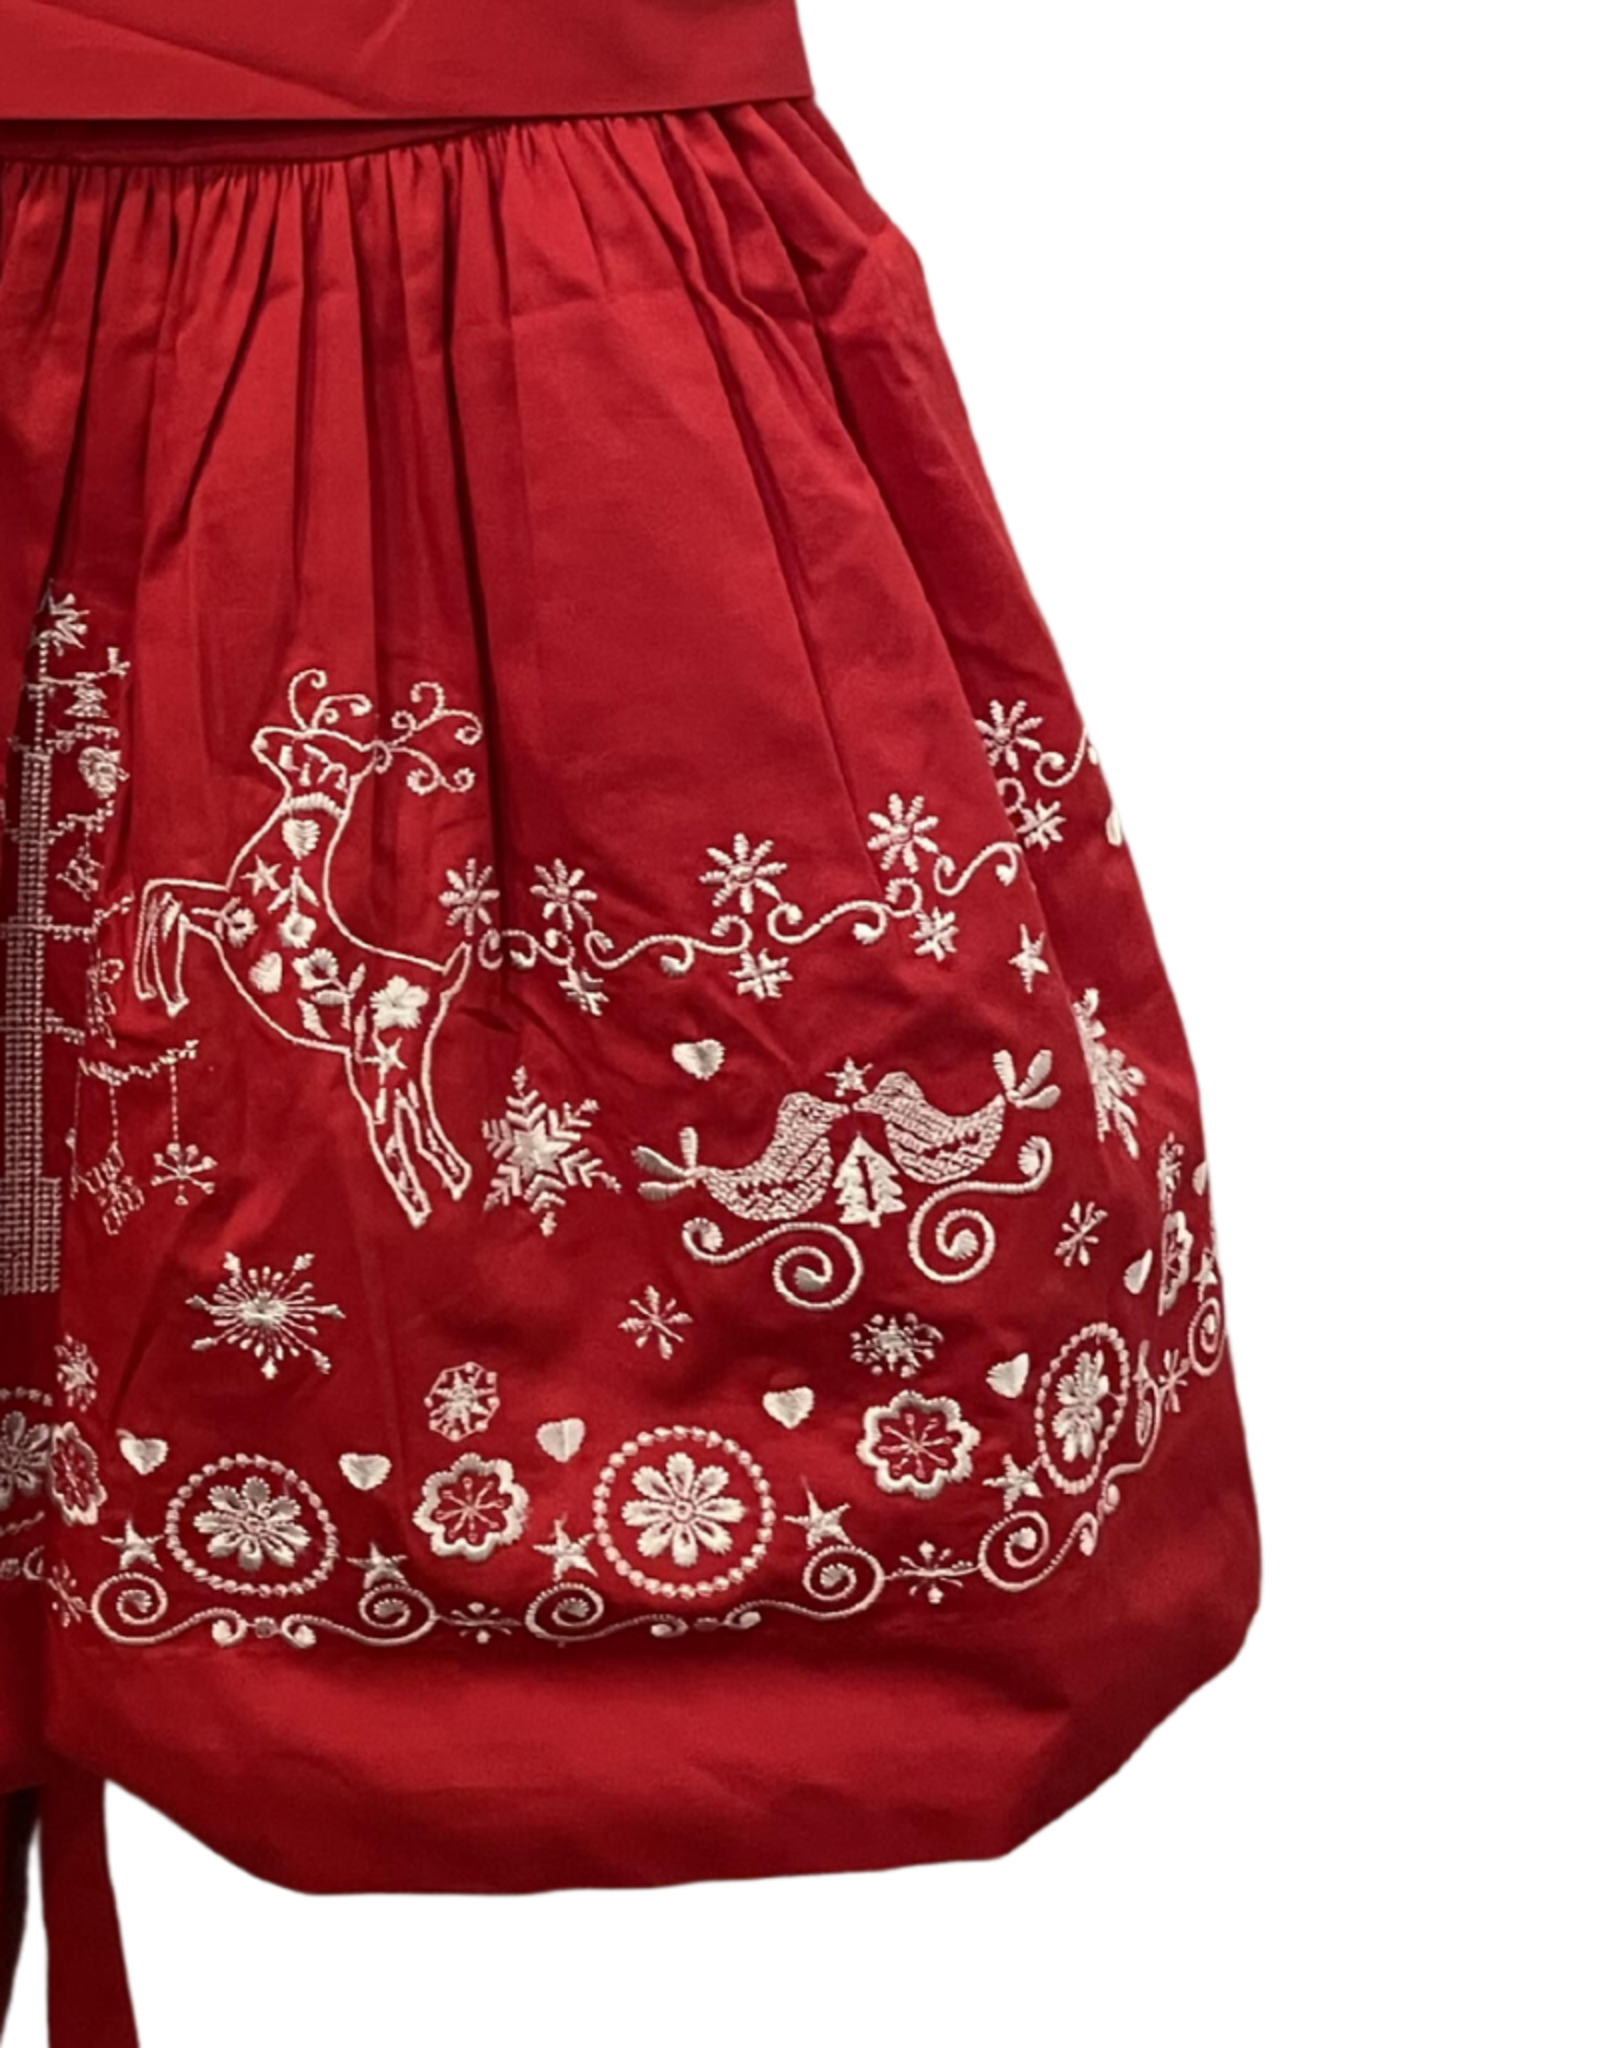 Danish Christmas Dress, Red & White